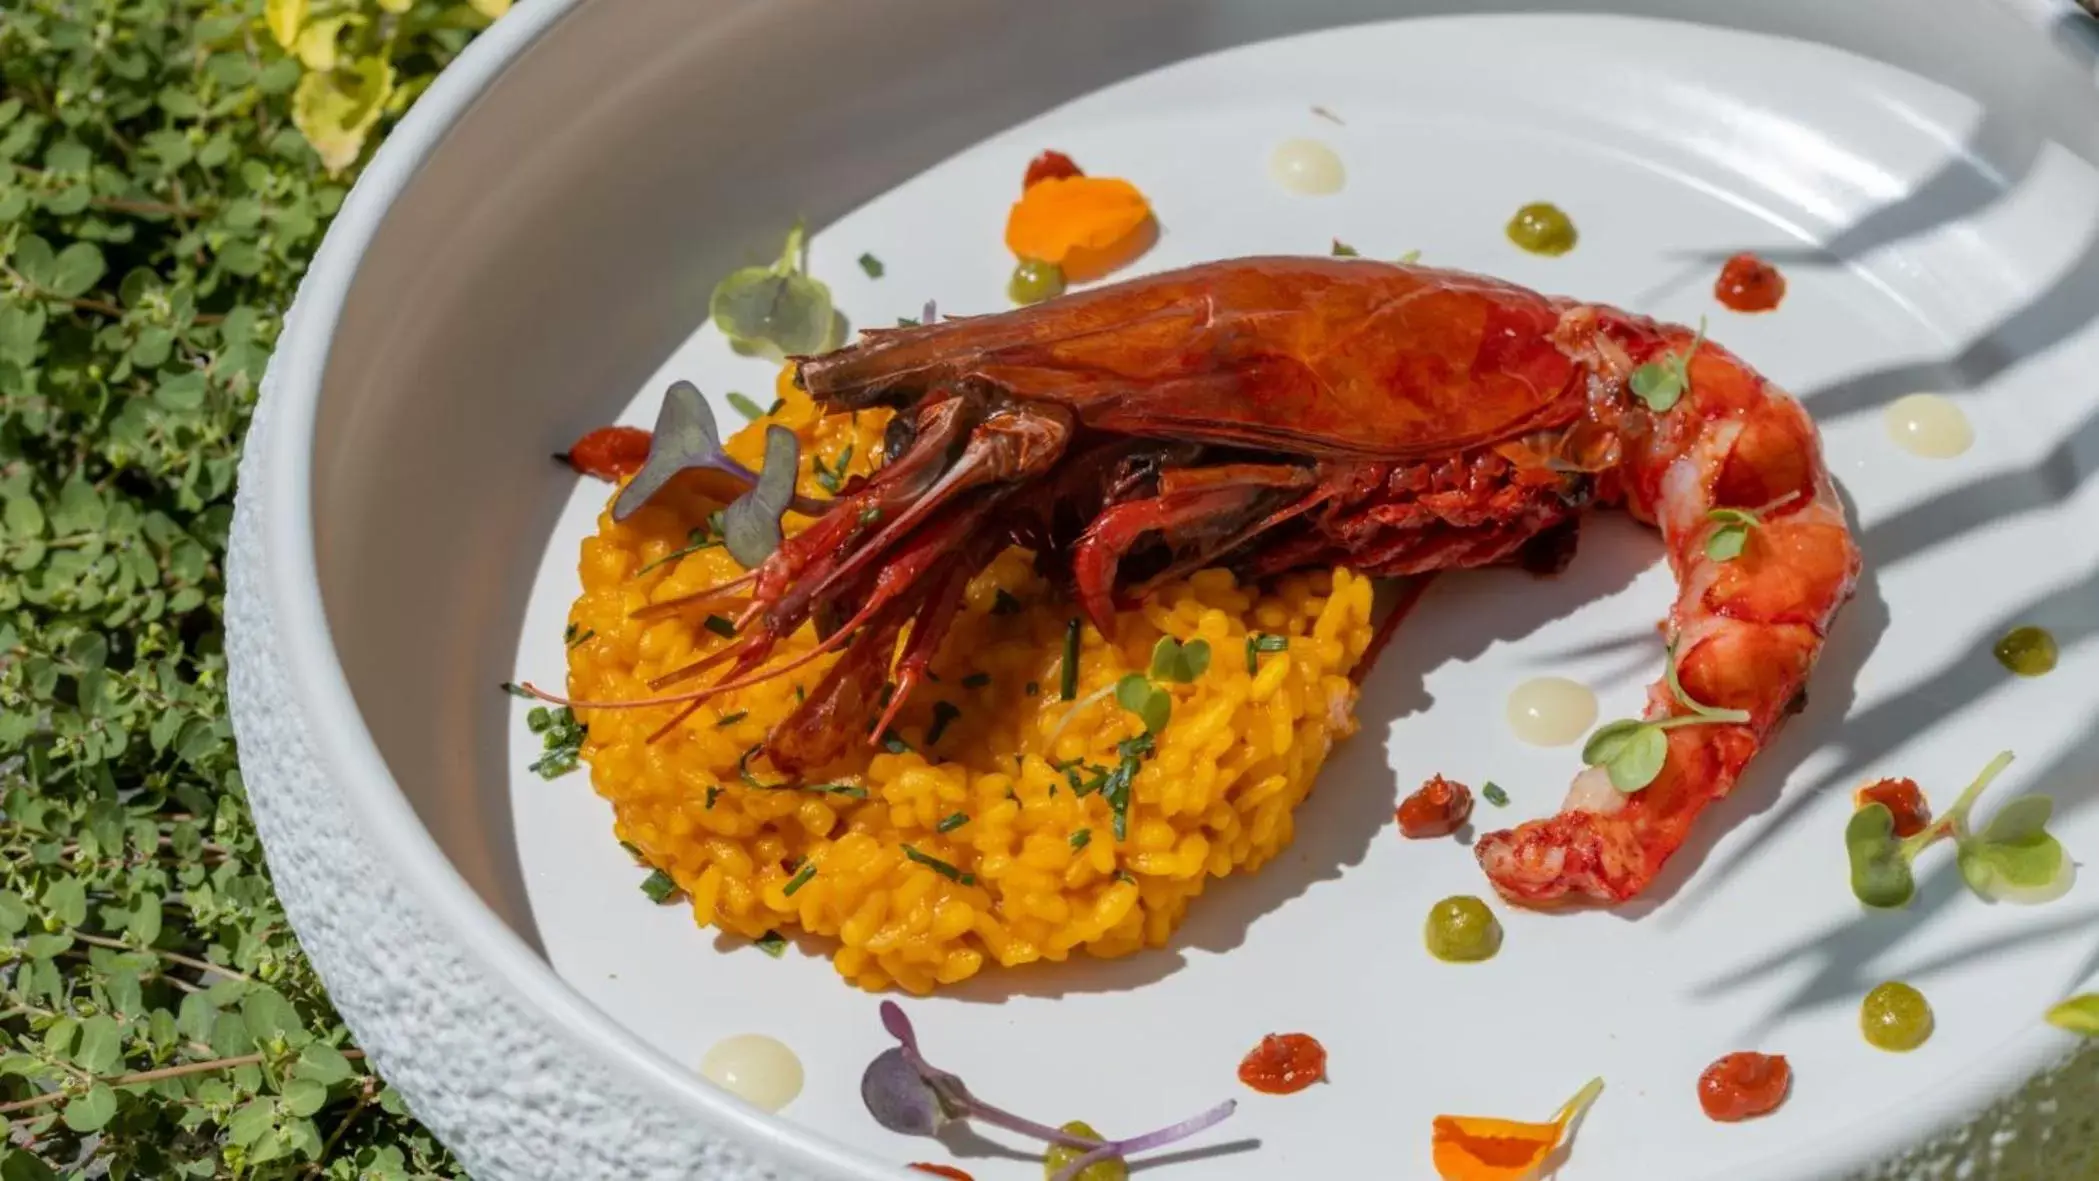 Restaurant/places to eat, Food in Mirador de Dalt Vila-Relais & Chateaux